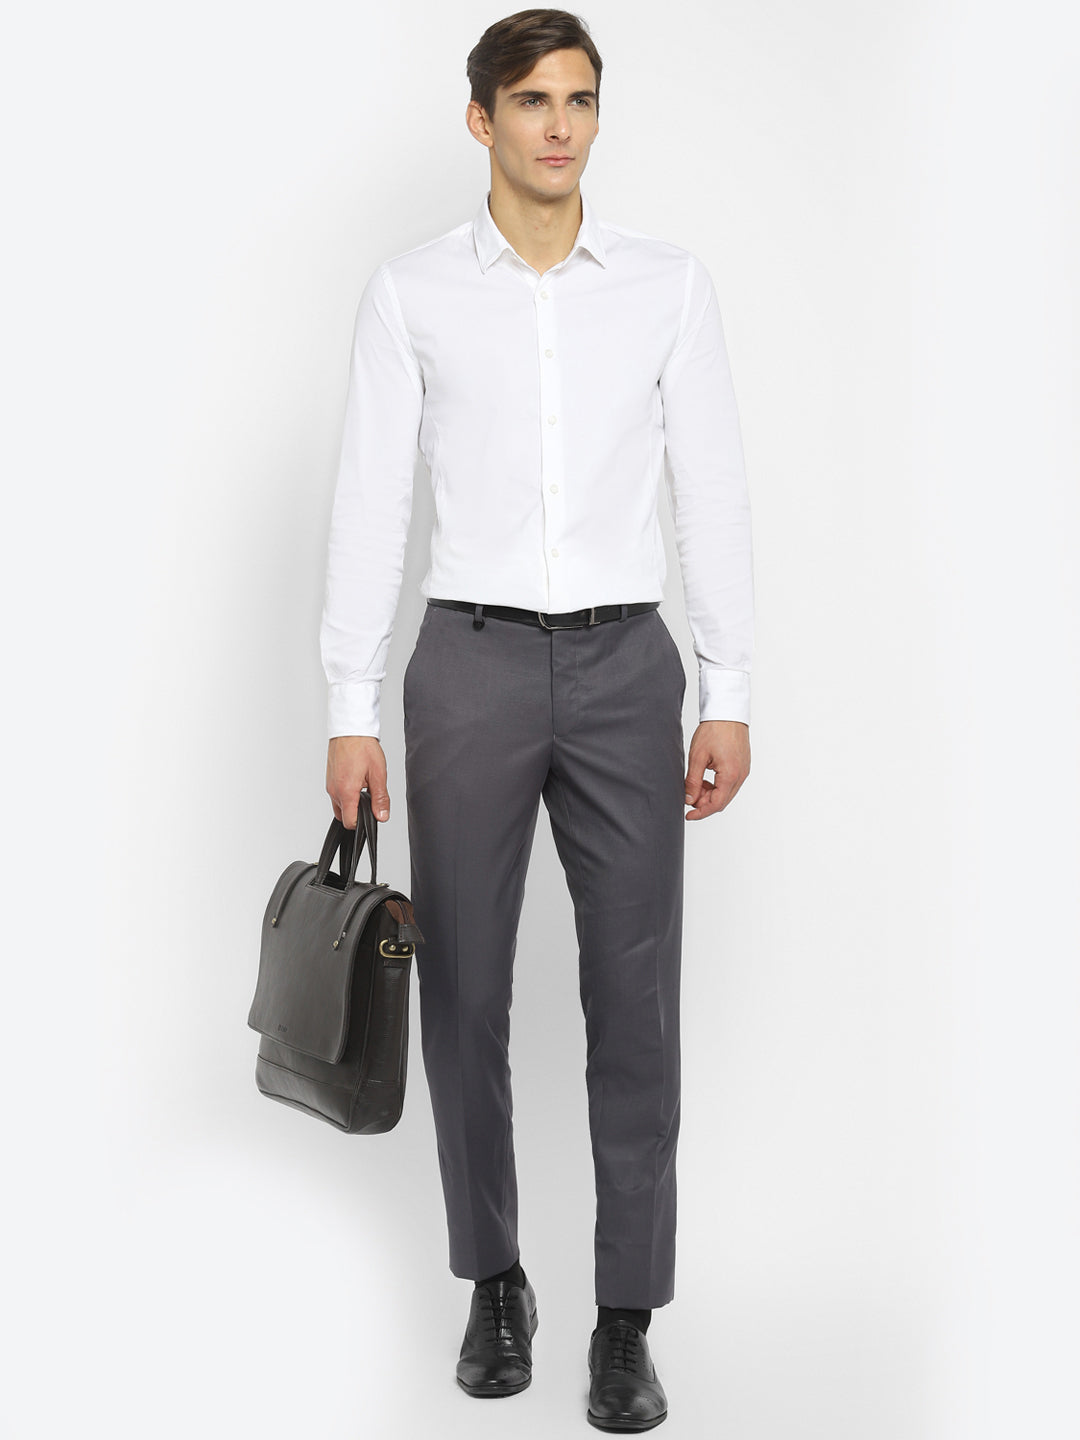 Dark Grey Slim Fit Self Design Trouser